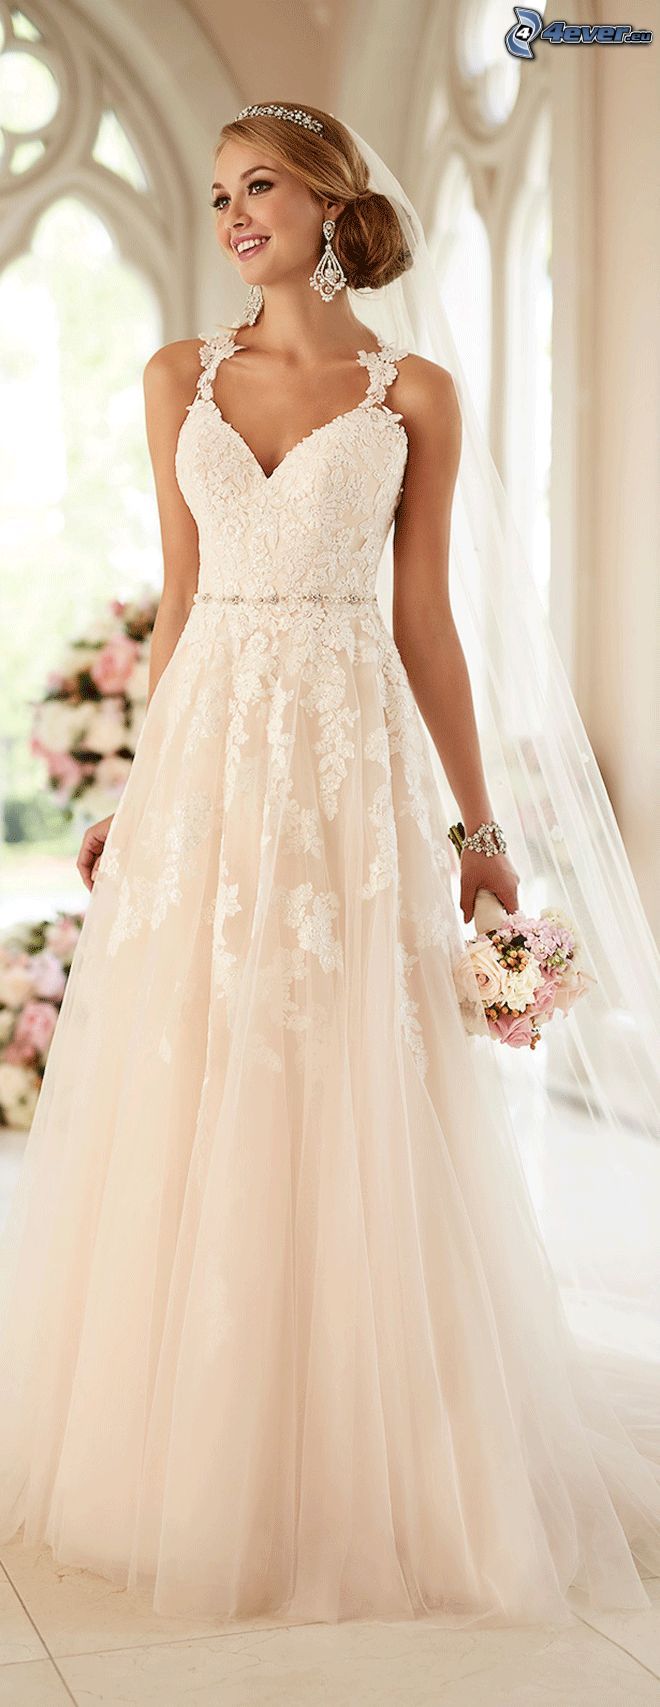 robes de mariée, mariée, bouquet de mariage, sourire